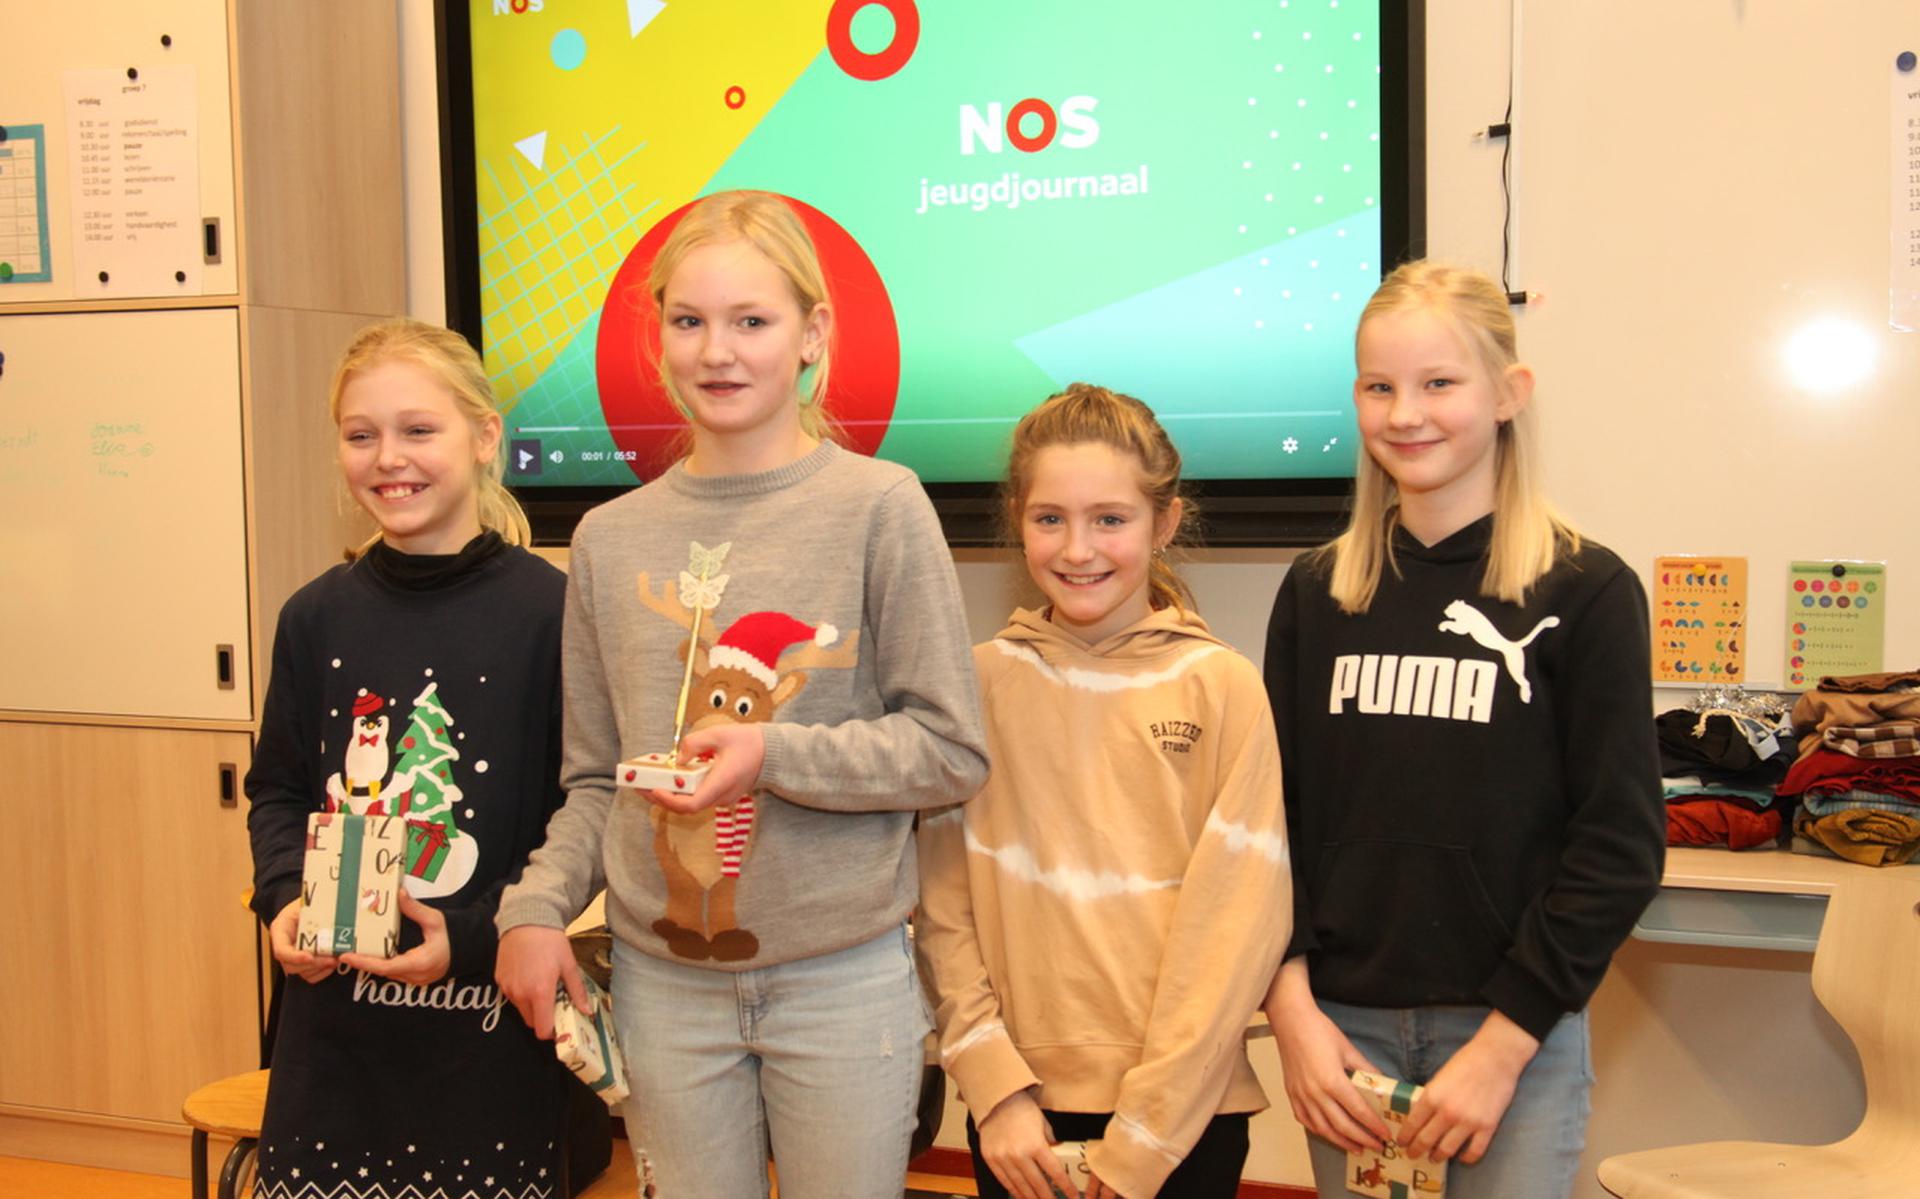 De winnaars van de schrijfwedstrijd, van links naar rechts Zoey Huizing, Elise Steenbergen, Florien Koetsier en Gabriëlle Mazereeuw.